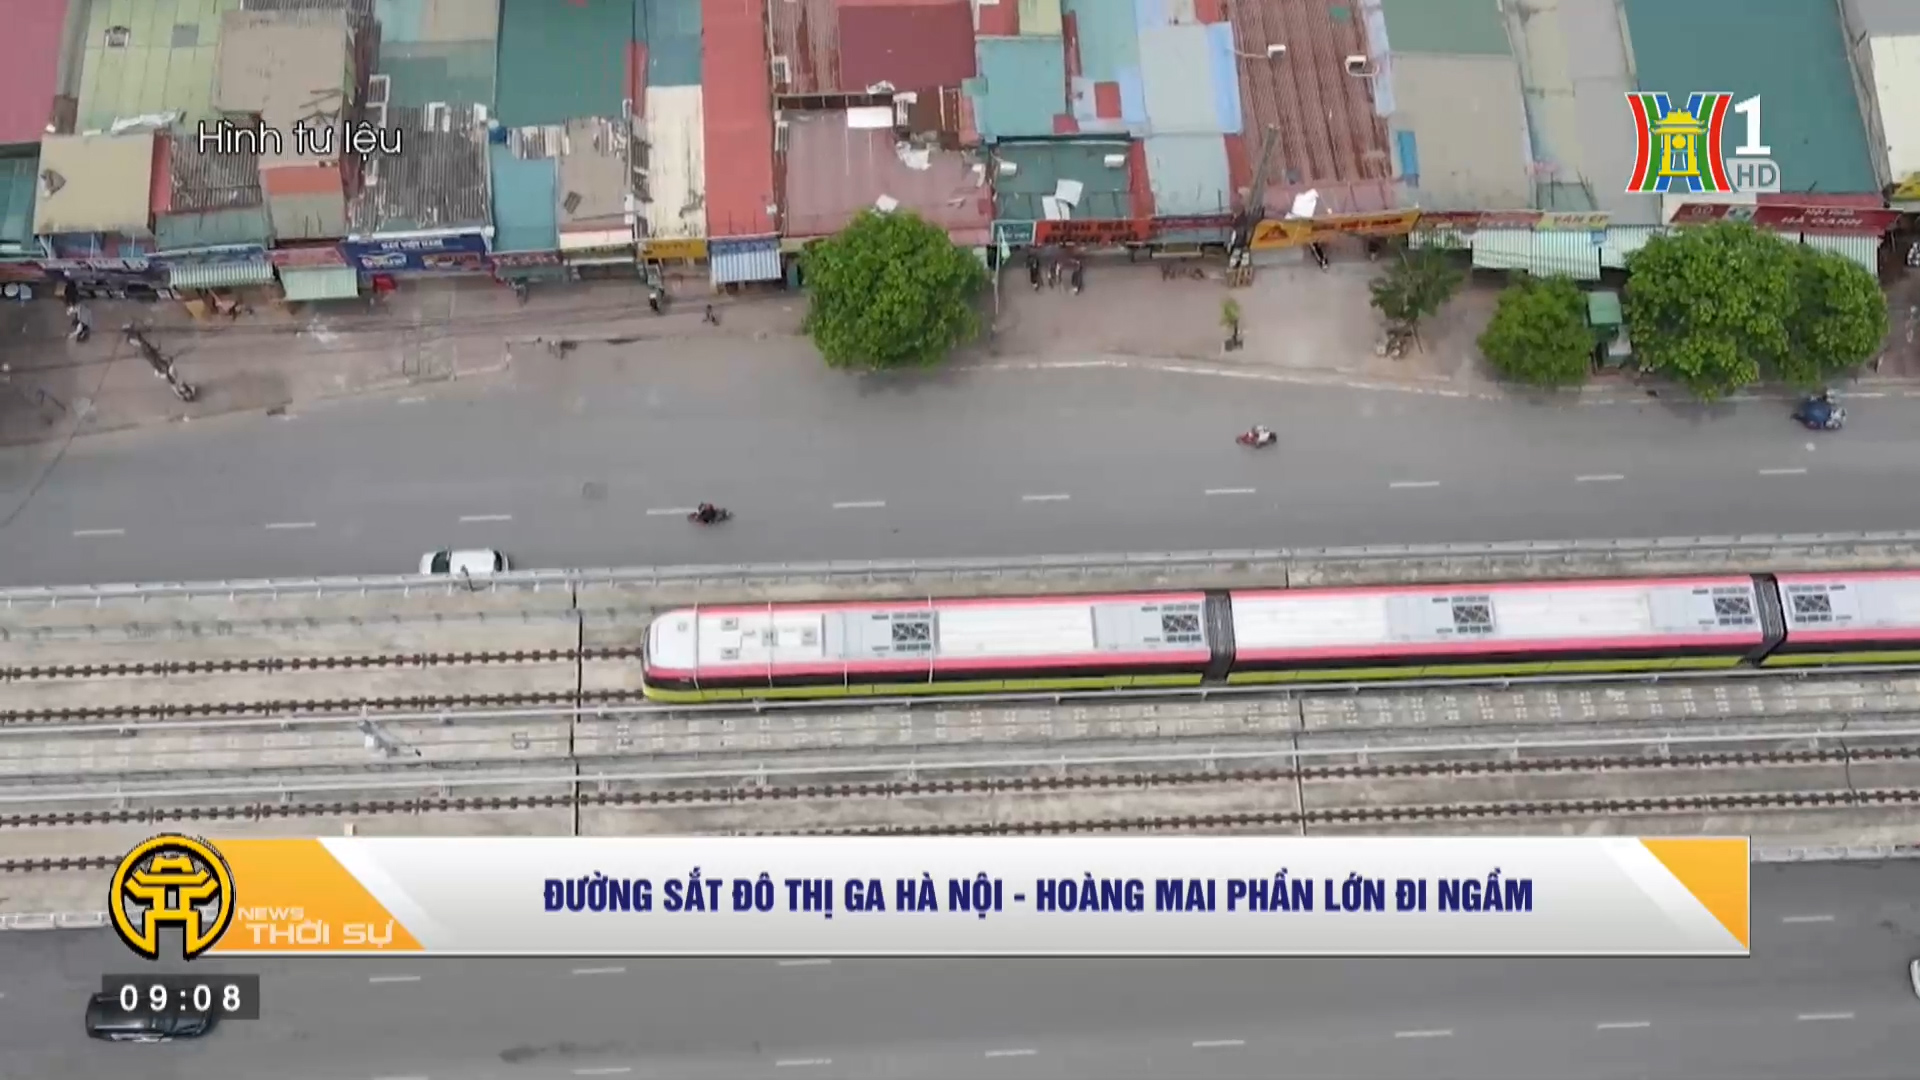 Đường sắt đô thị Ga Hà Nội Hoàng Mai phần lớn đi ngầm